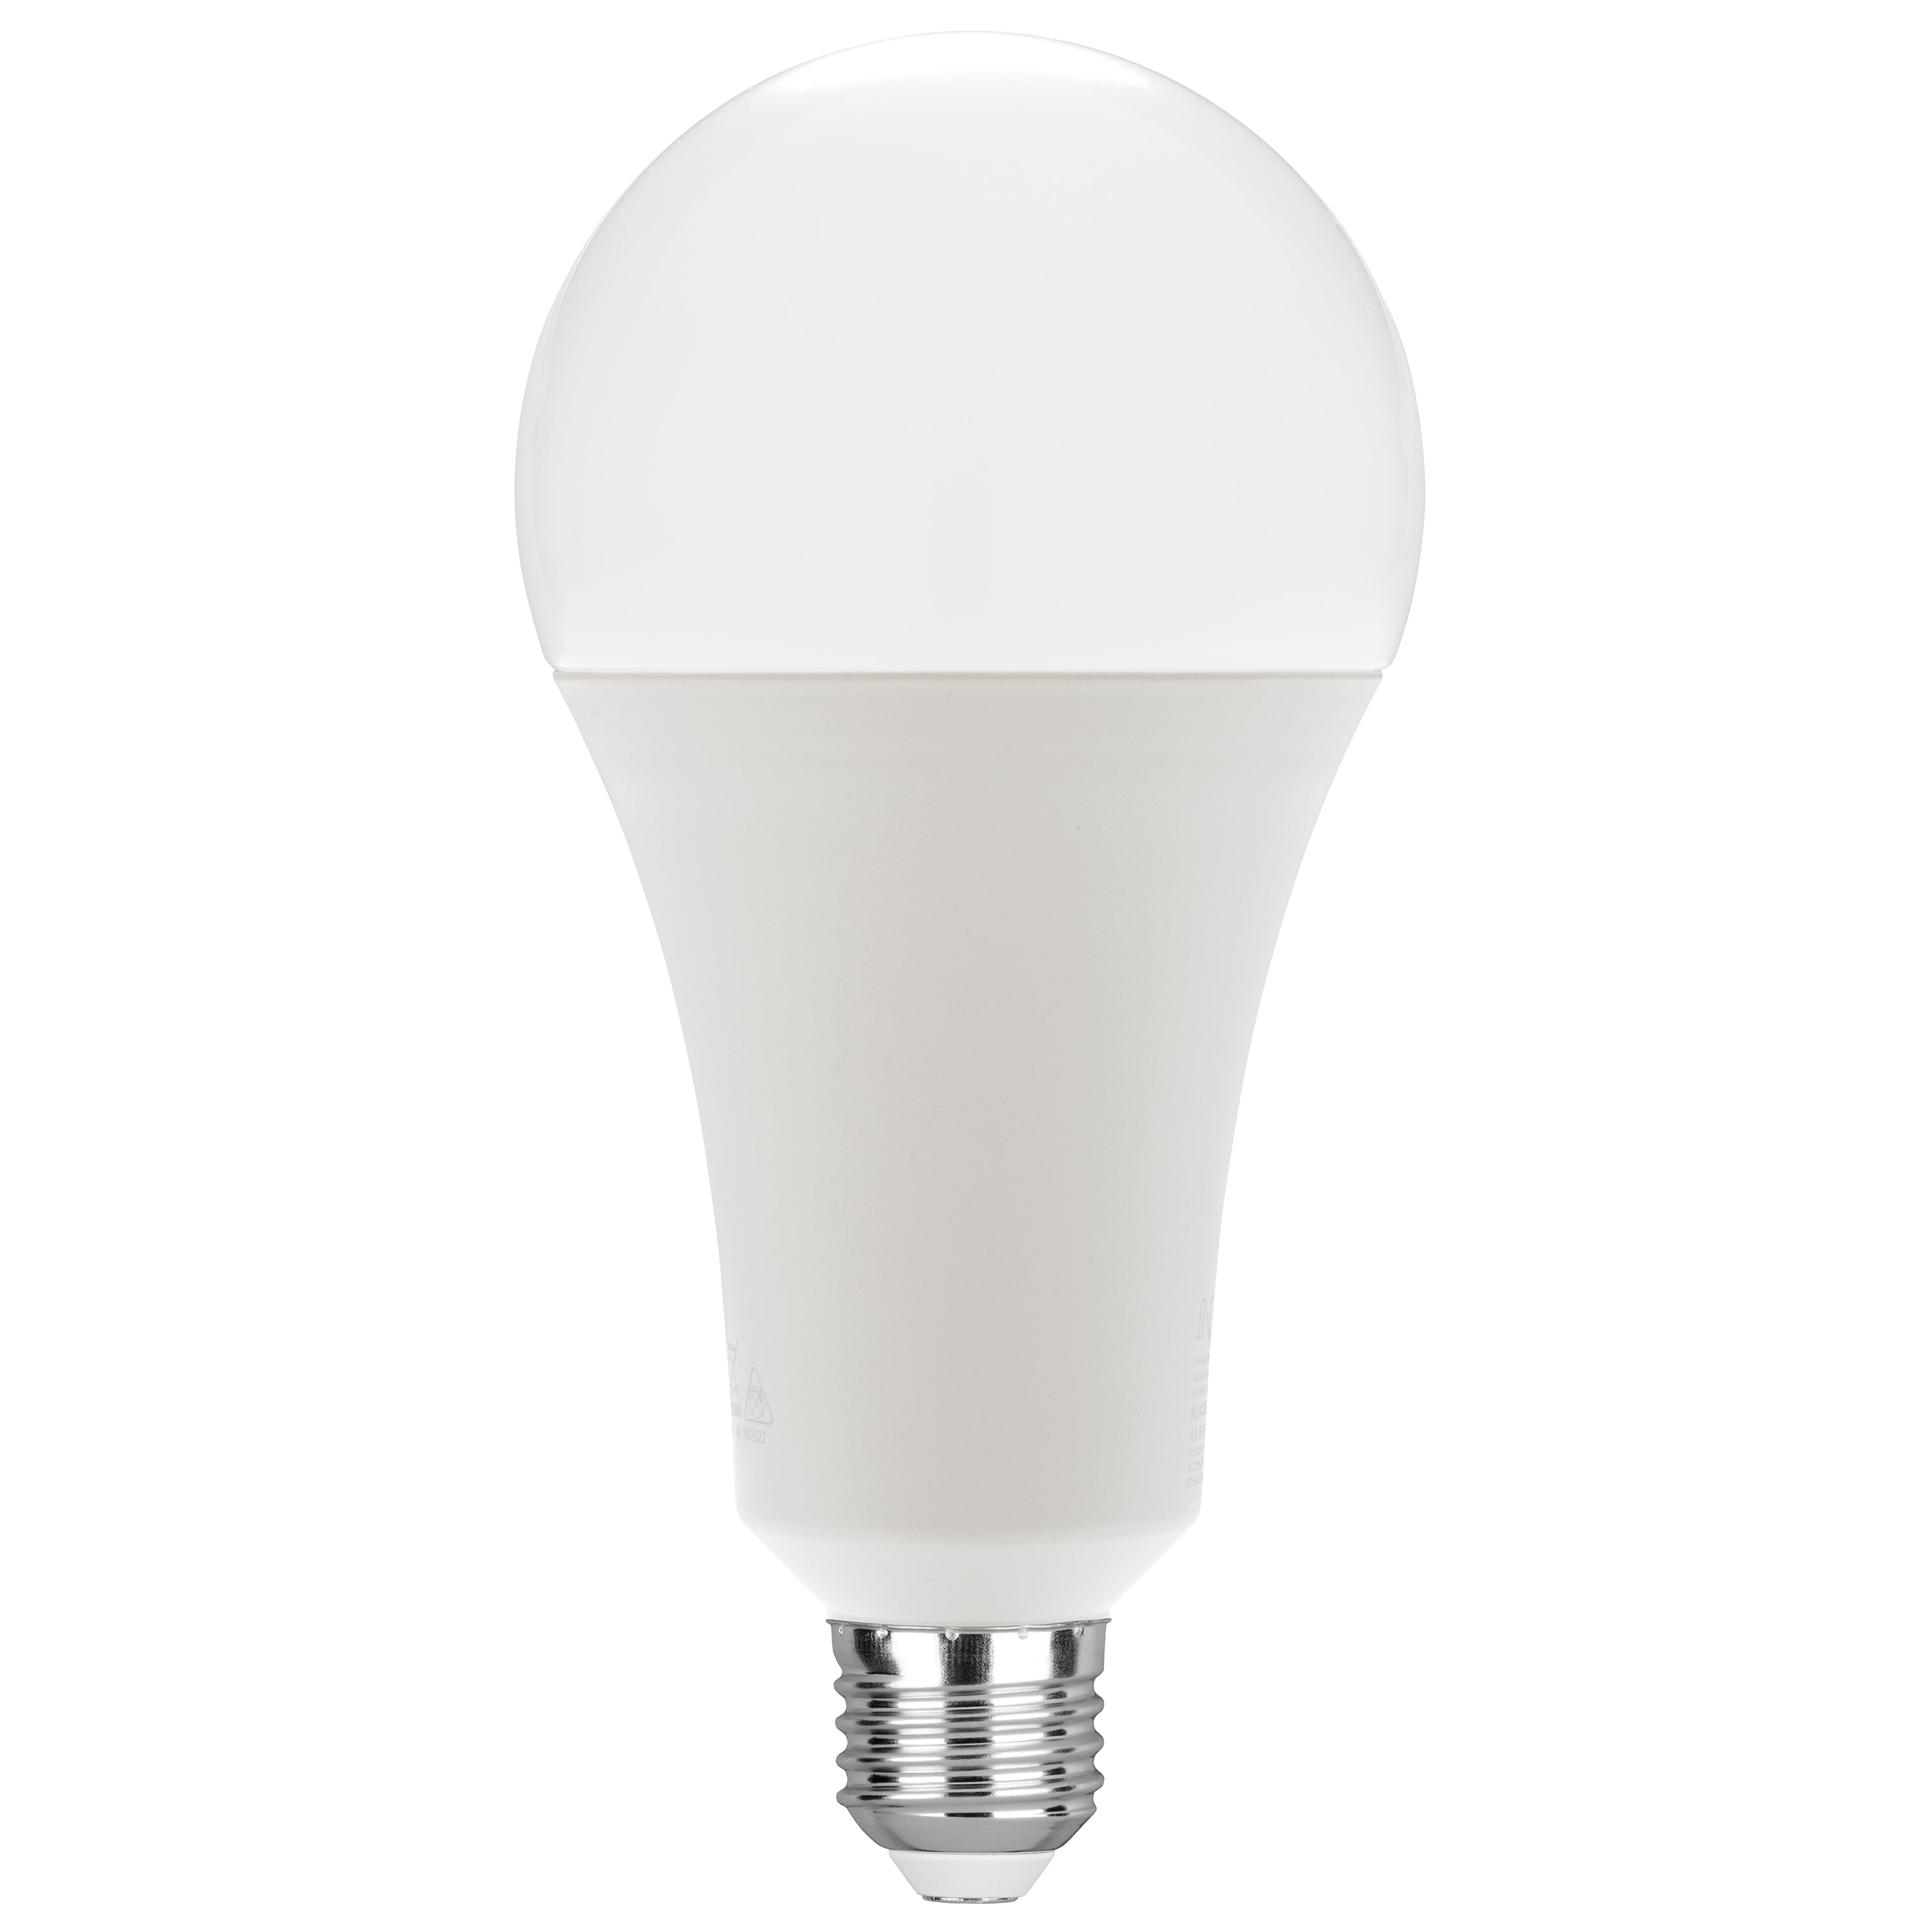 Ampoule LED KLASSIC lumière naturelle 25W E27 3520L 184mm 